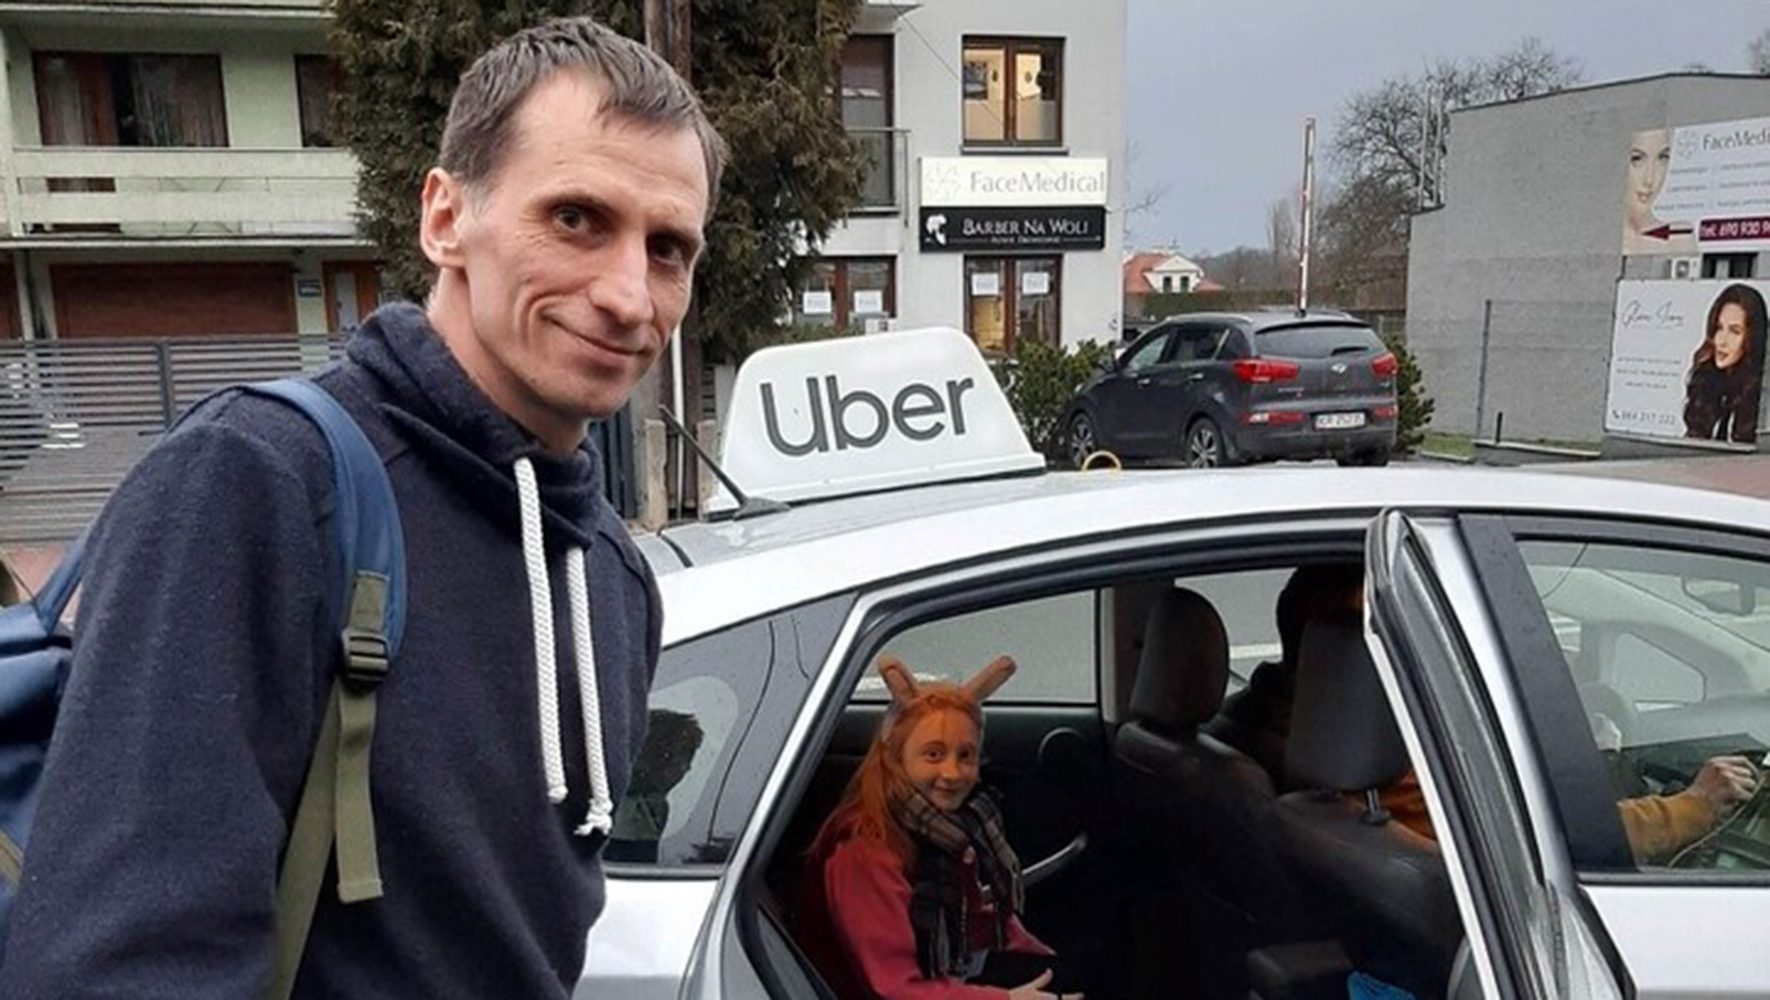 Man outside of Uber car, little girl inside silver car